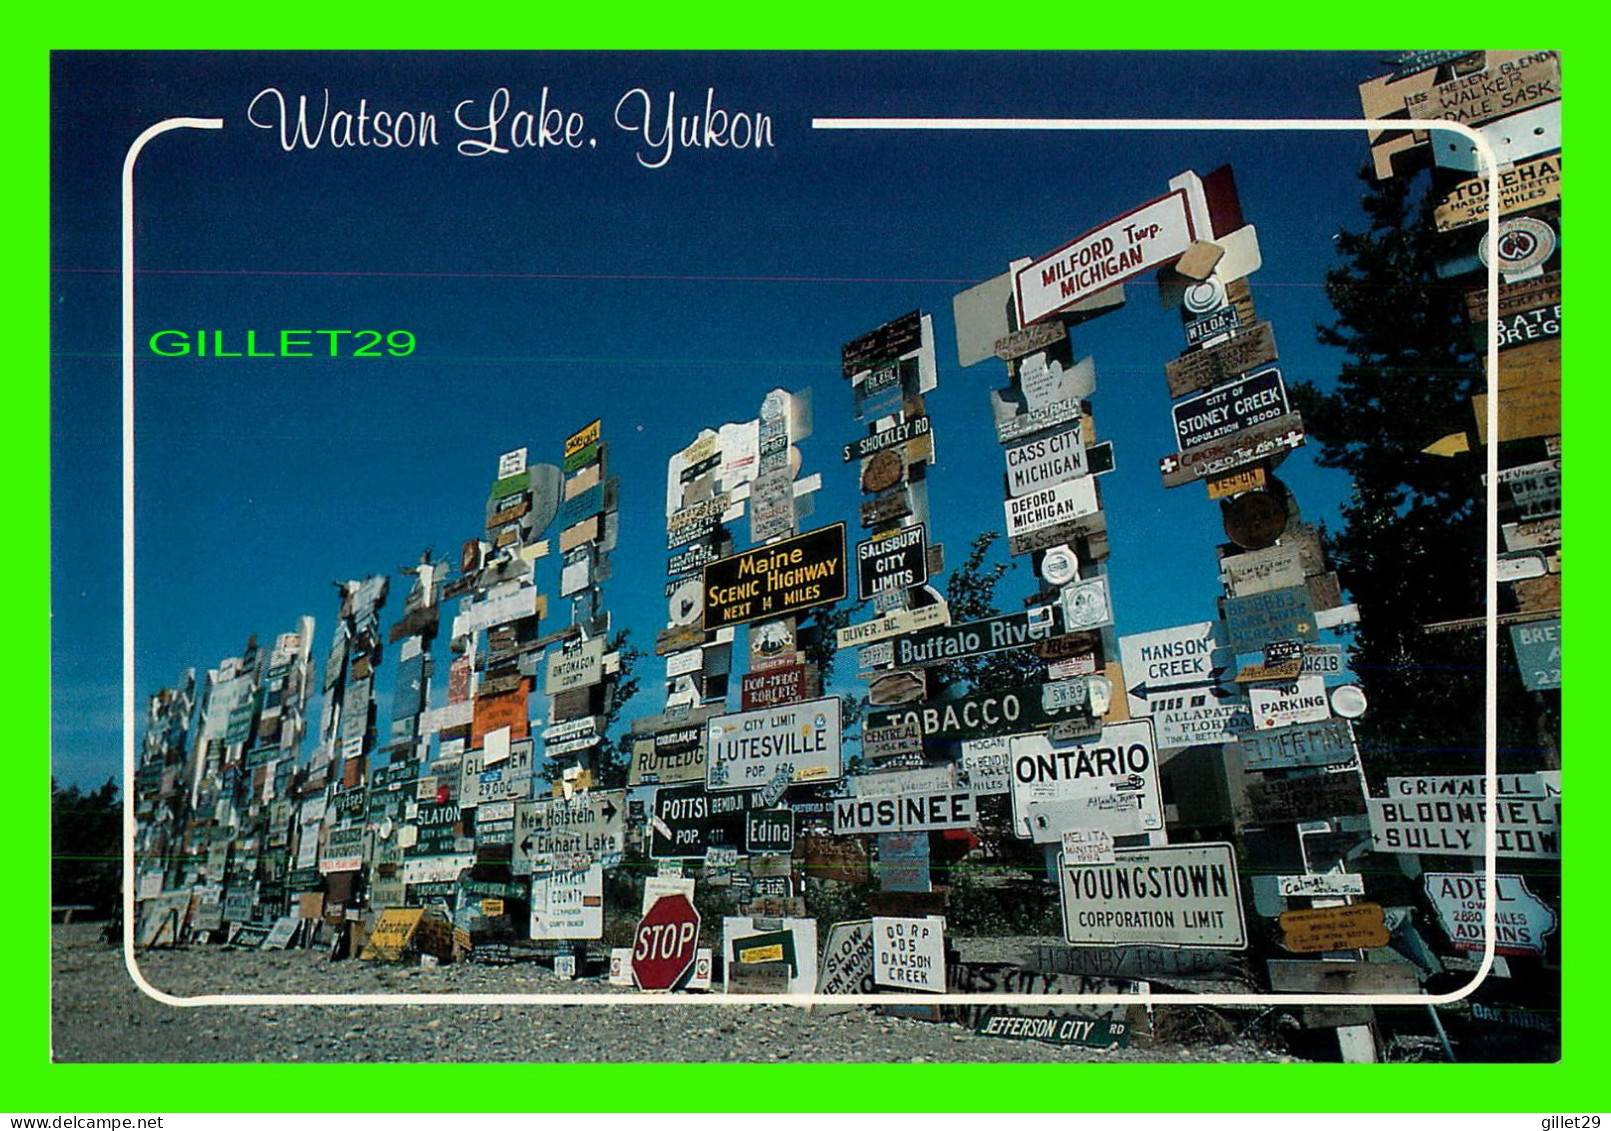 WATSON LAKE, YUKON - WATSON LAKE SIGN POSTS - ALASKA HIGHWAY MILE 635 - STUDIO NORTH LTD - - Yukon